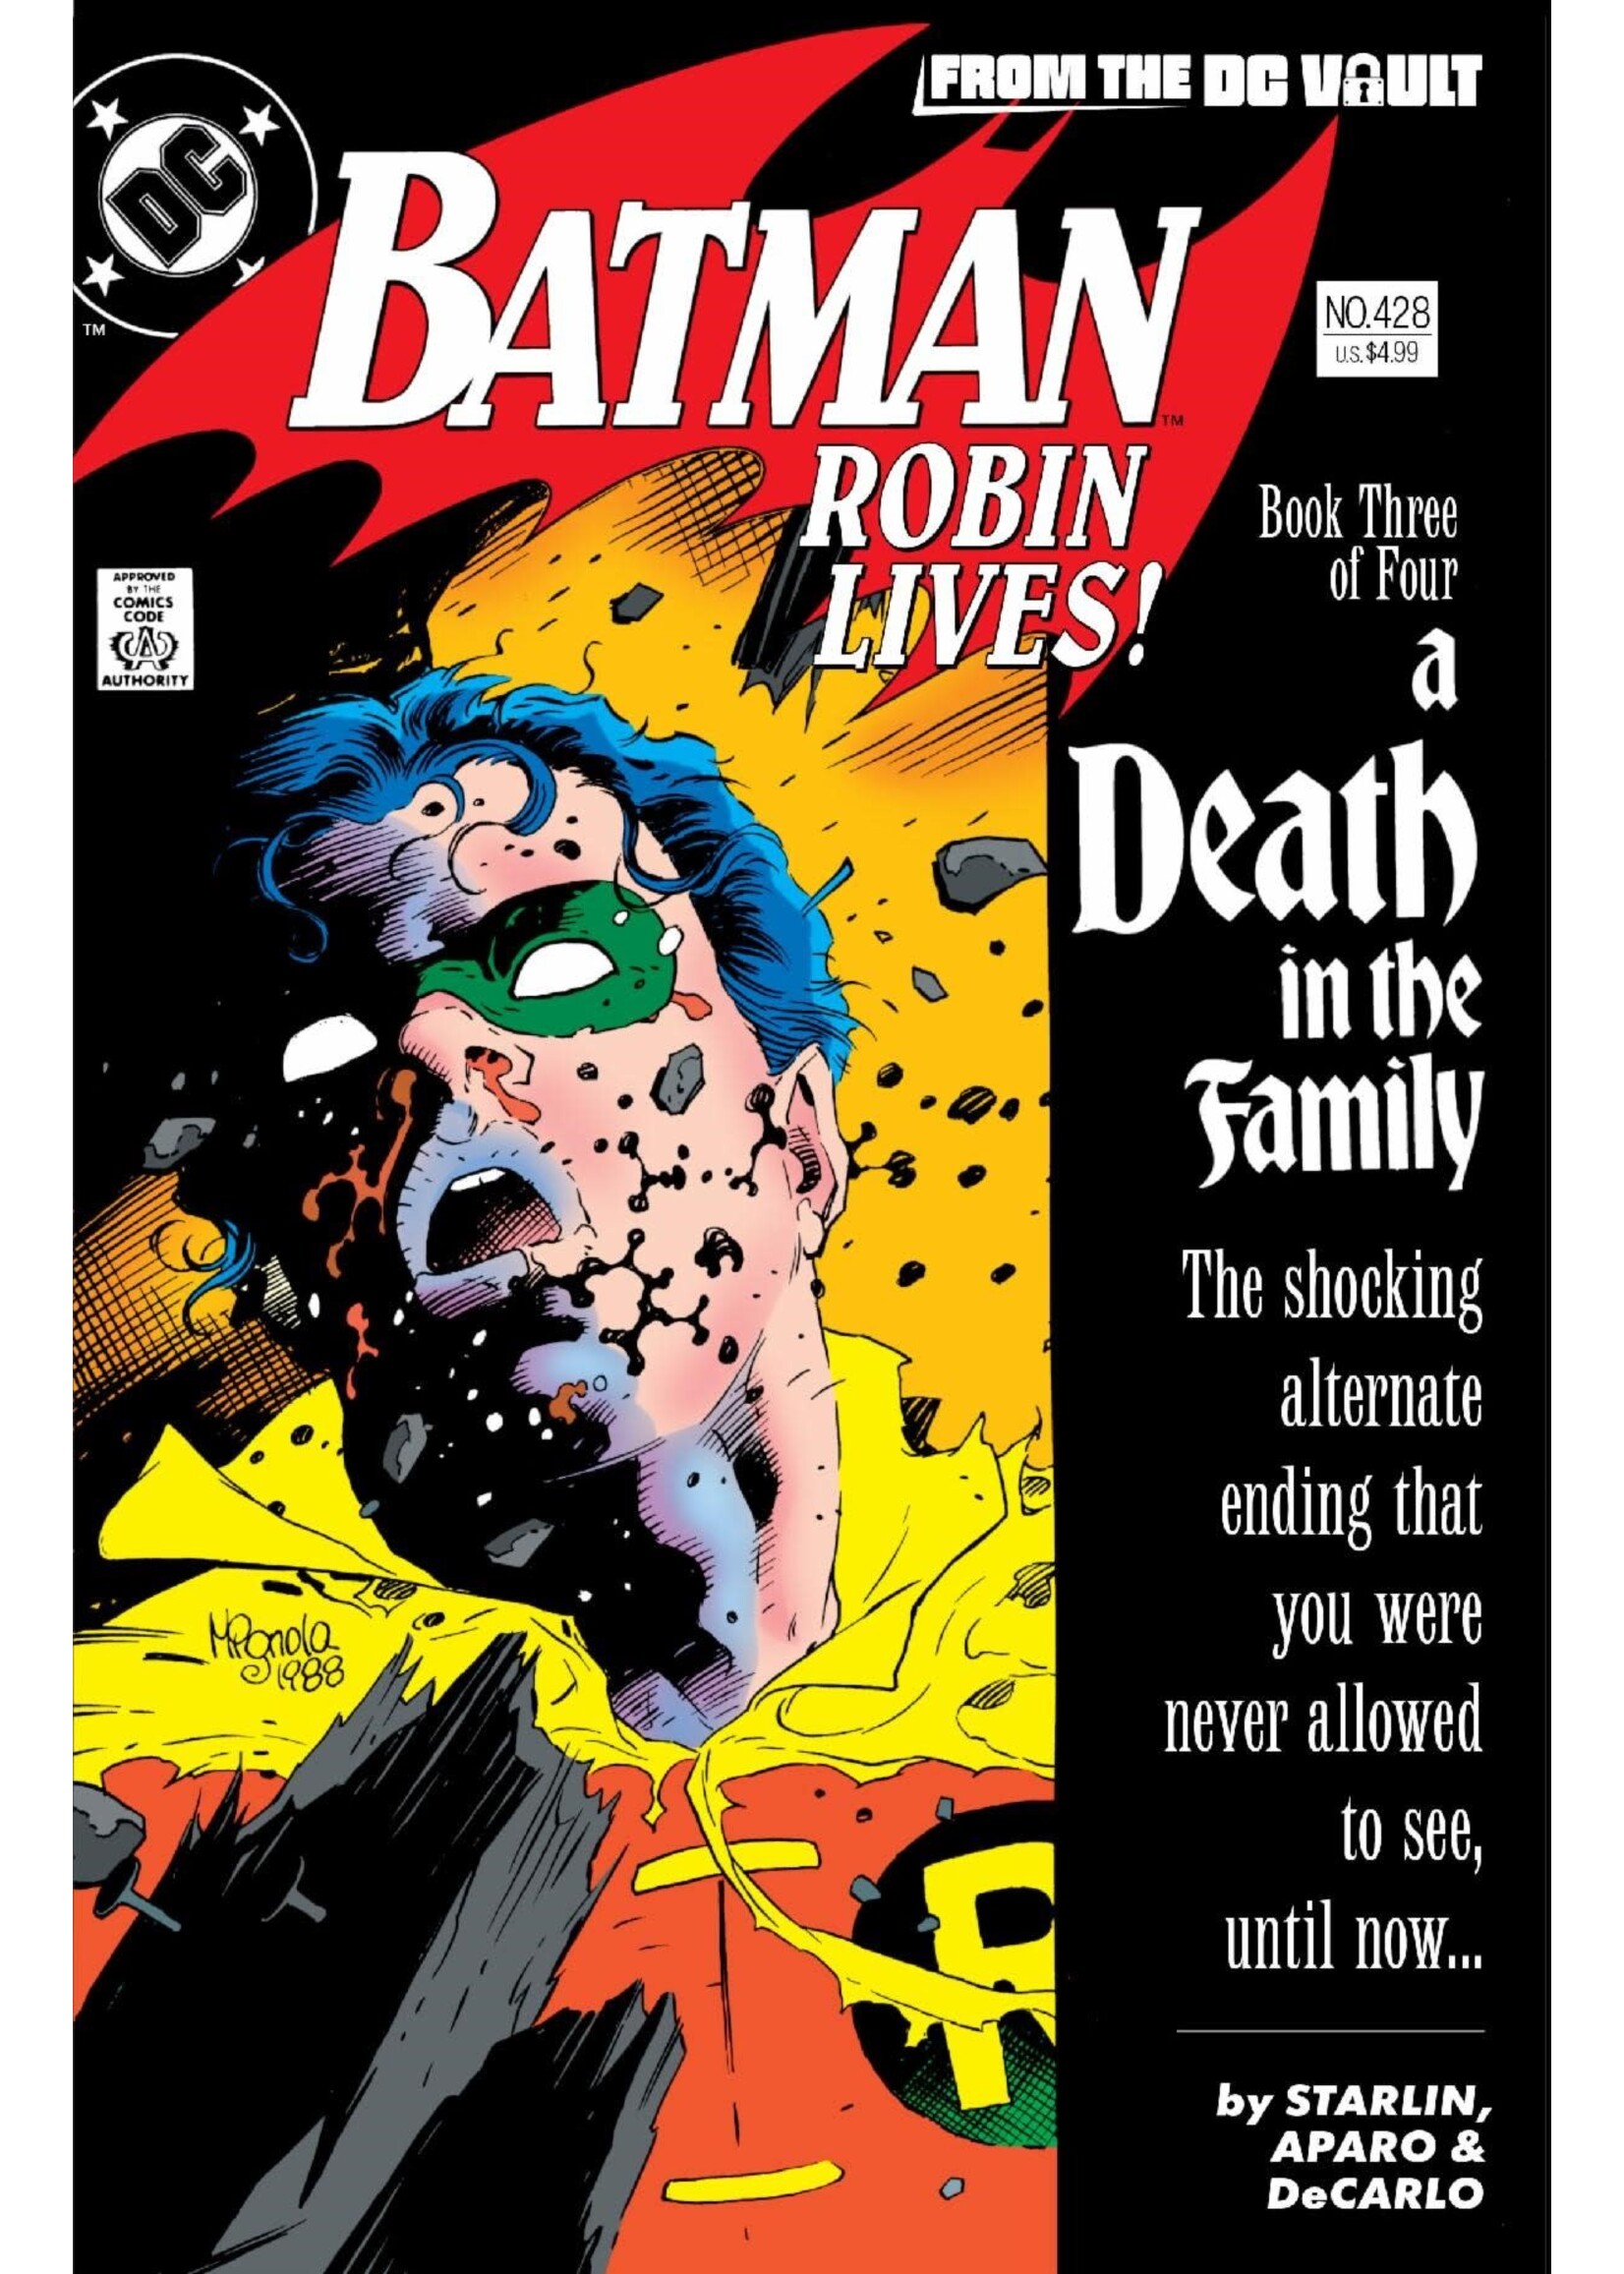 DC COMICS BATMAN #428 ROBIN LIVES!